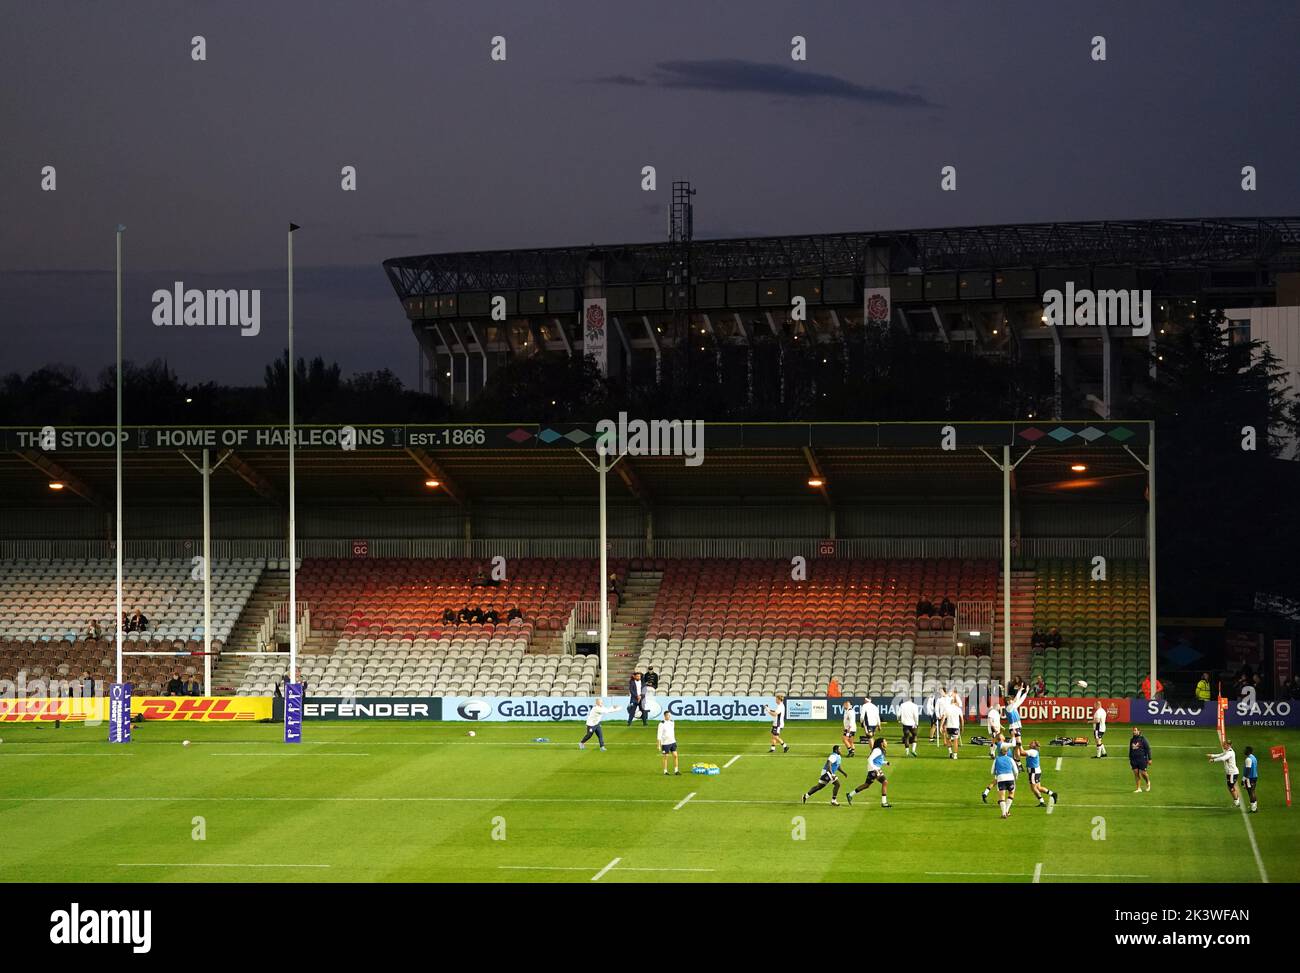 I giocatori si scaldano davanti alla seconda partita della Premiership Rugby Cup al Twickenham Stoop, Londra. Data immagine: Mercoledì 28 settembre 2022. Foto Stock